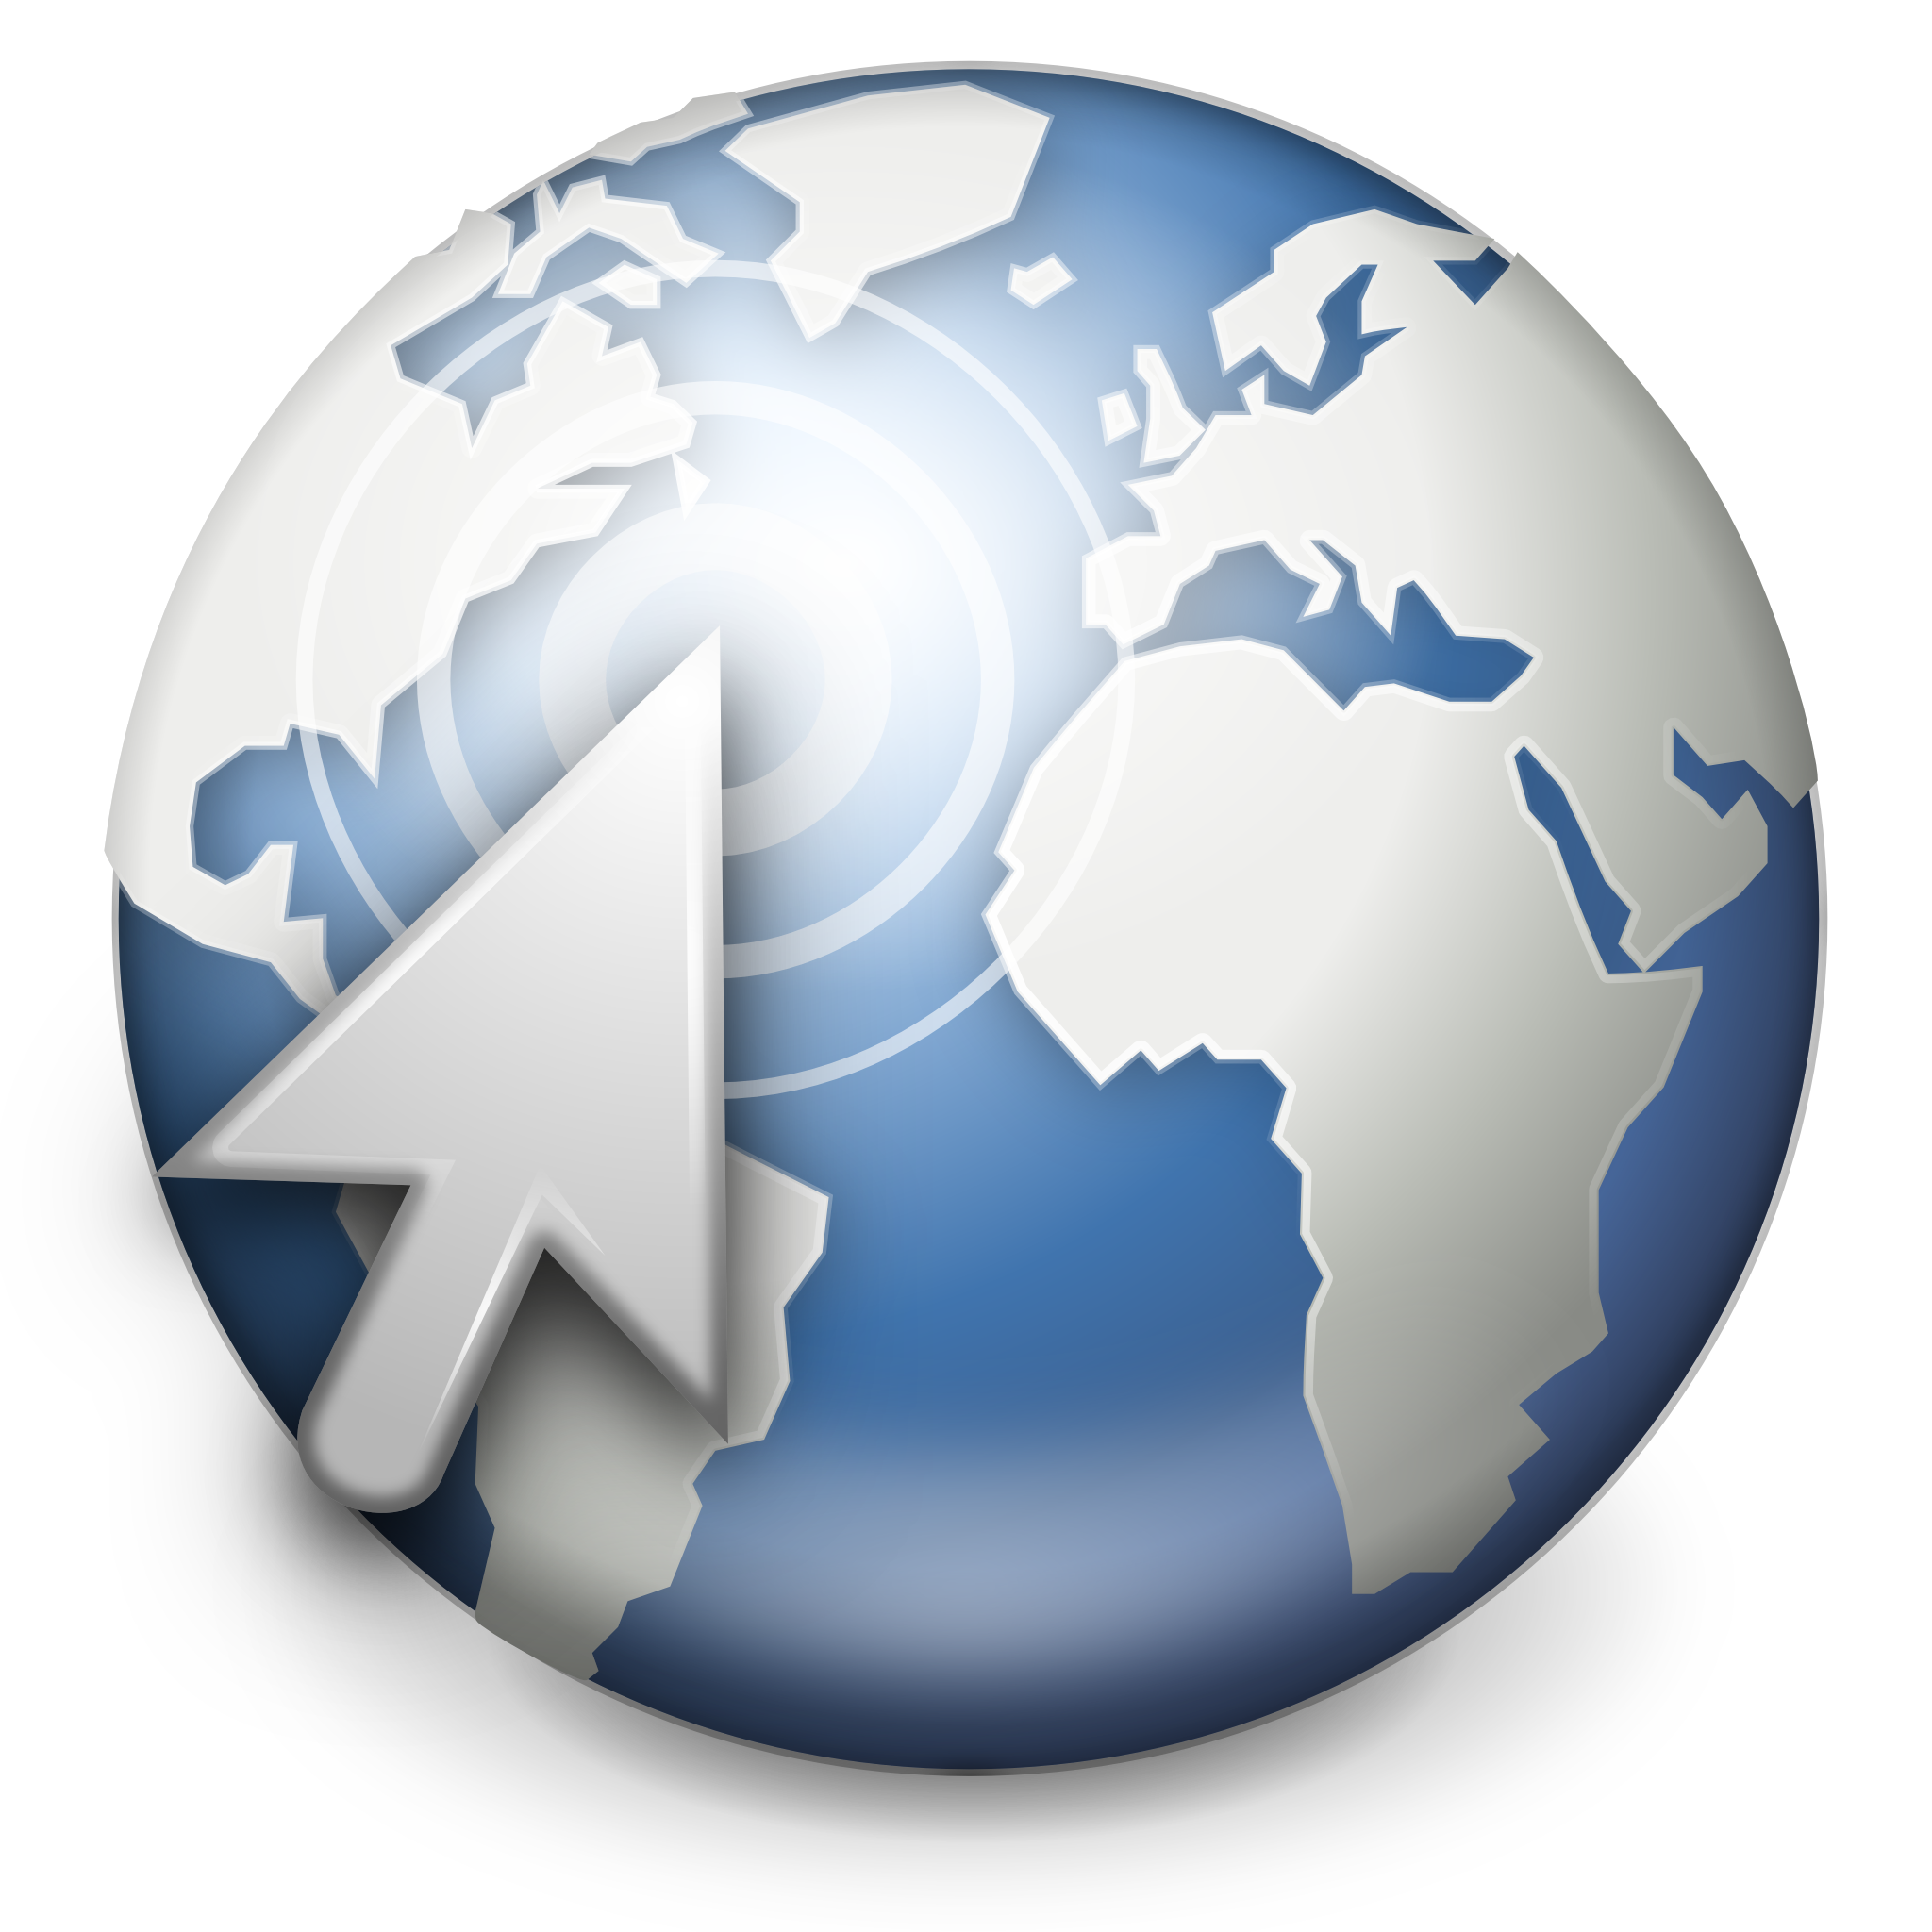 Web (f.k.a. Epiphany) browser logo